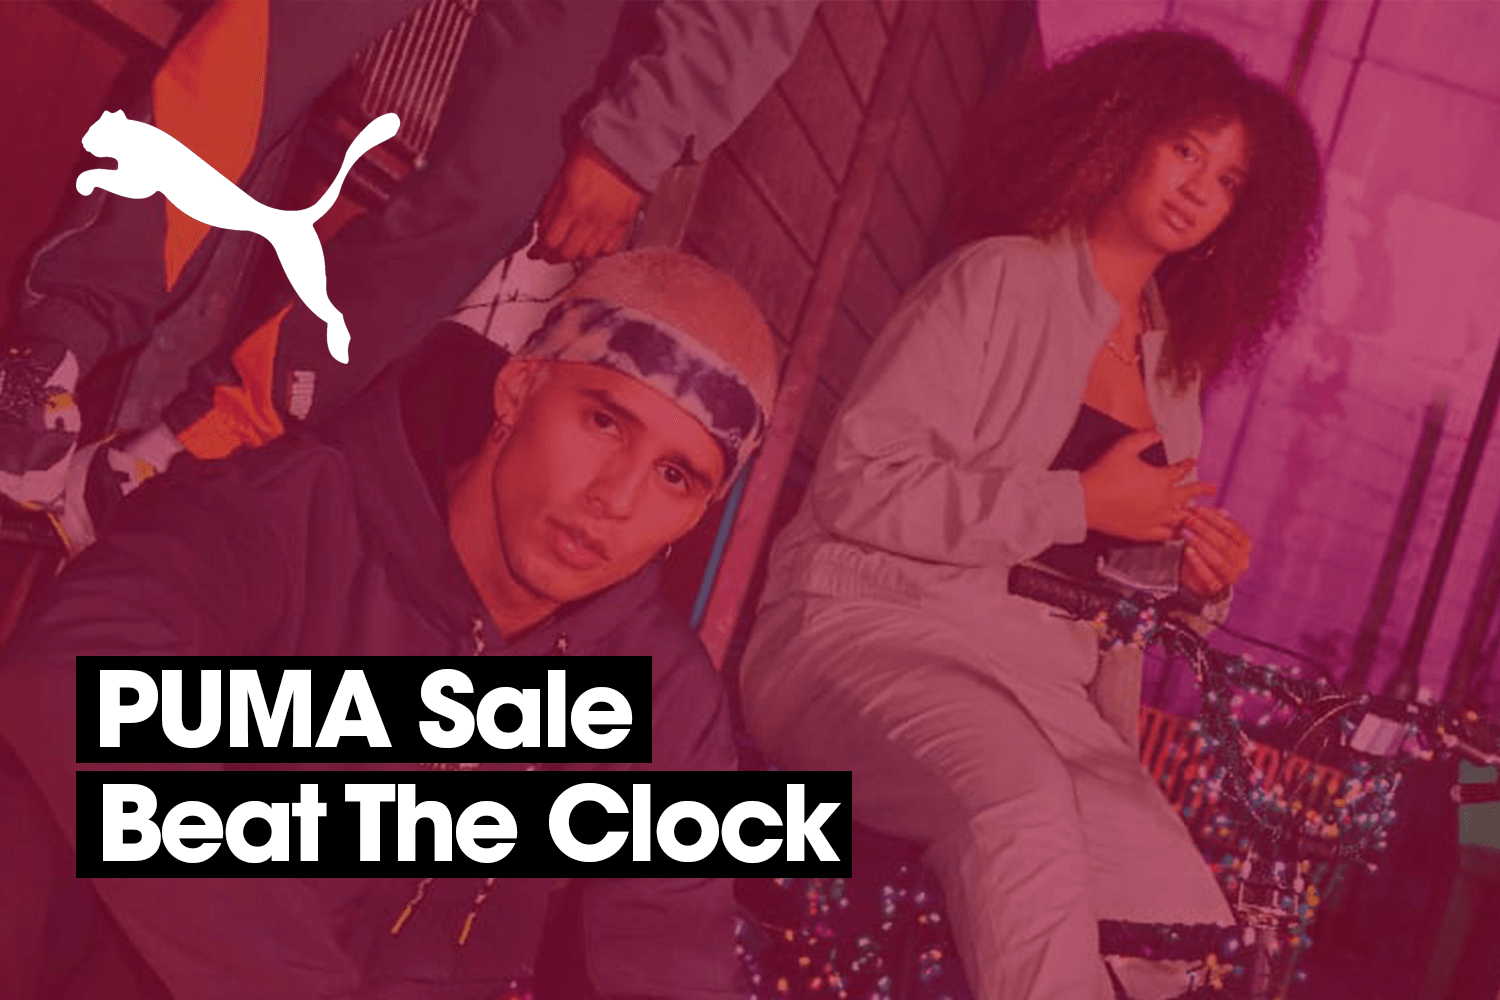 Die Uhr tickt beim PUMA Beat the Clock Sale